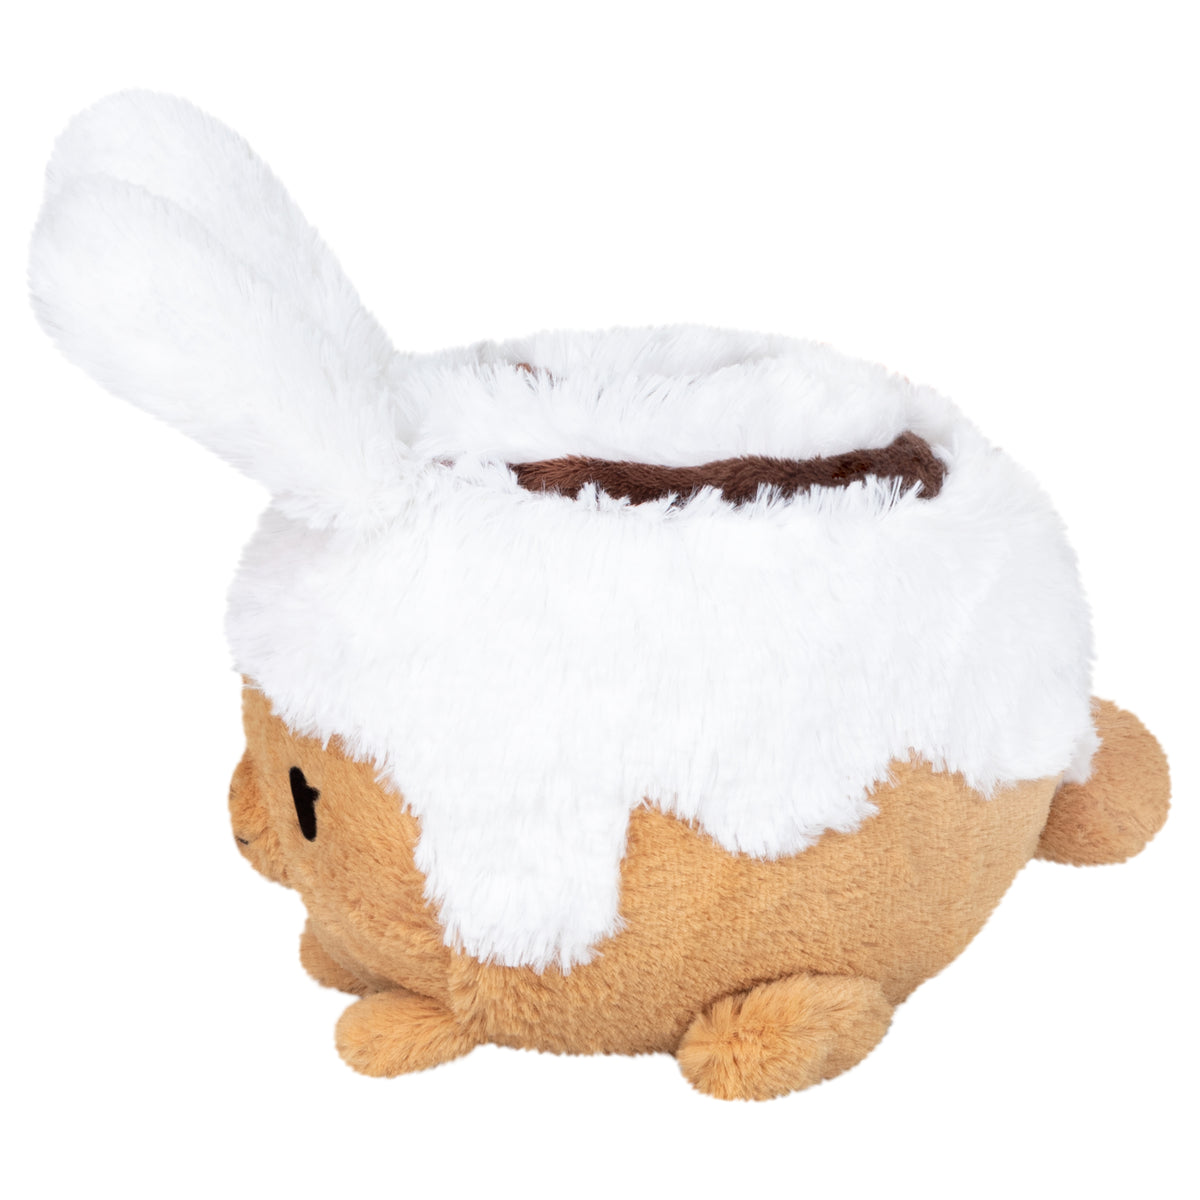 Cinnamon Bun Plush Toy - Cozy Bunny with Cinnamon Swirl by MarninSaylor